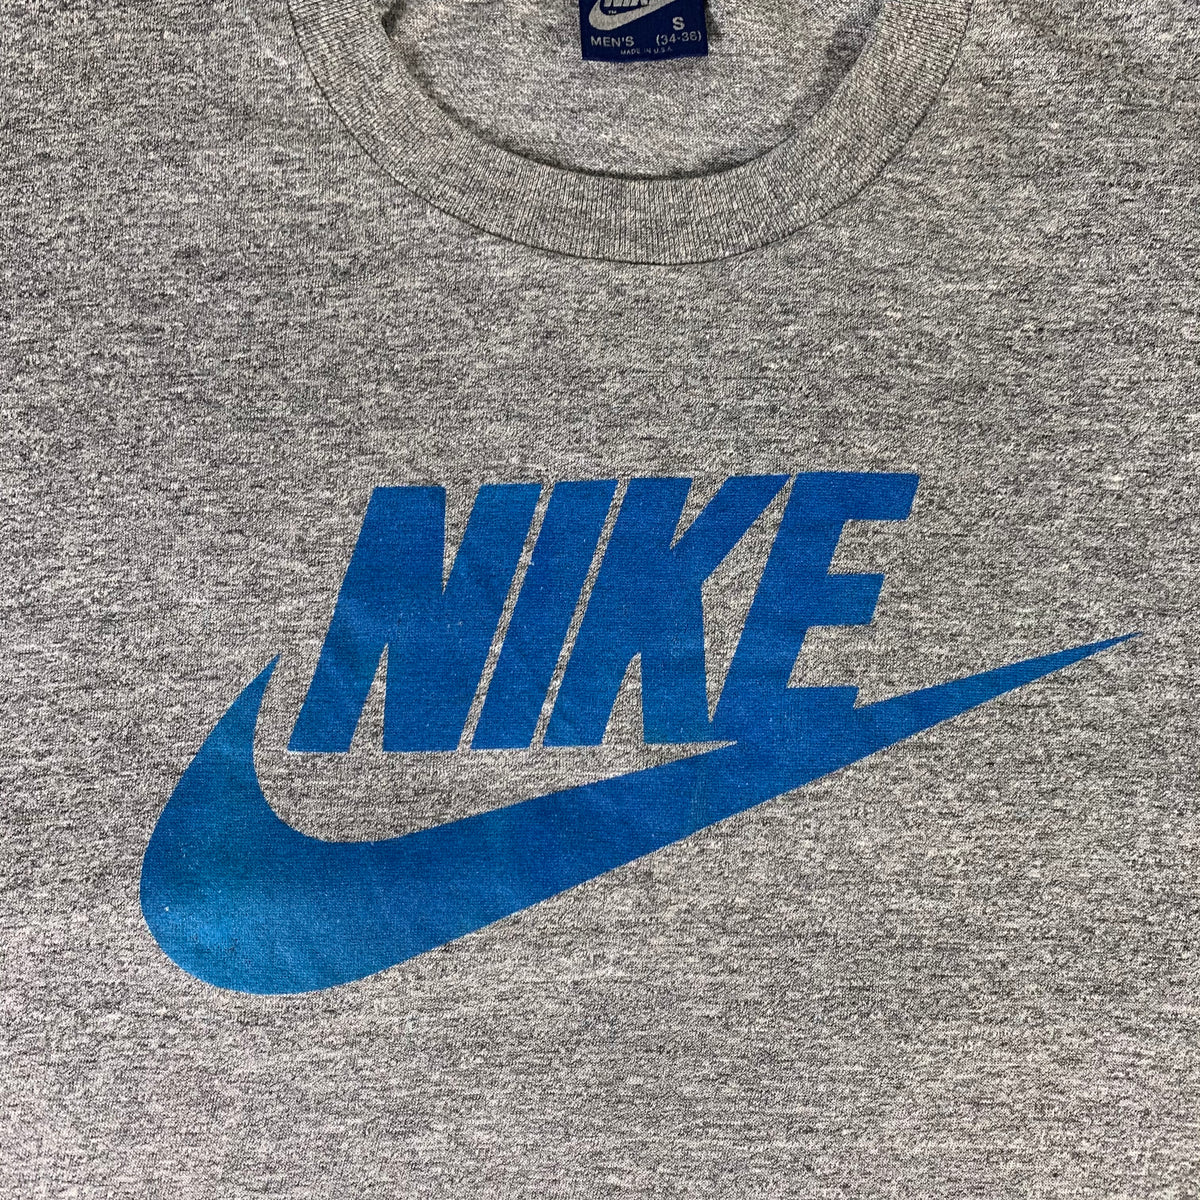 Vintage Nike &quot;Logo&quot; T-Shirt